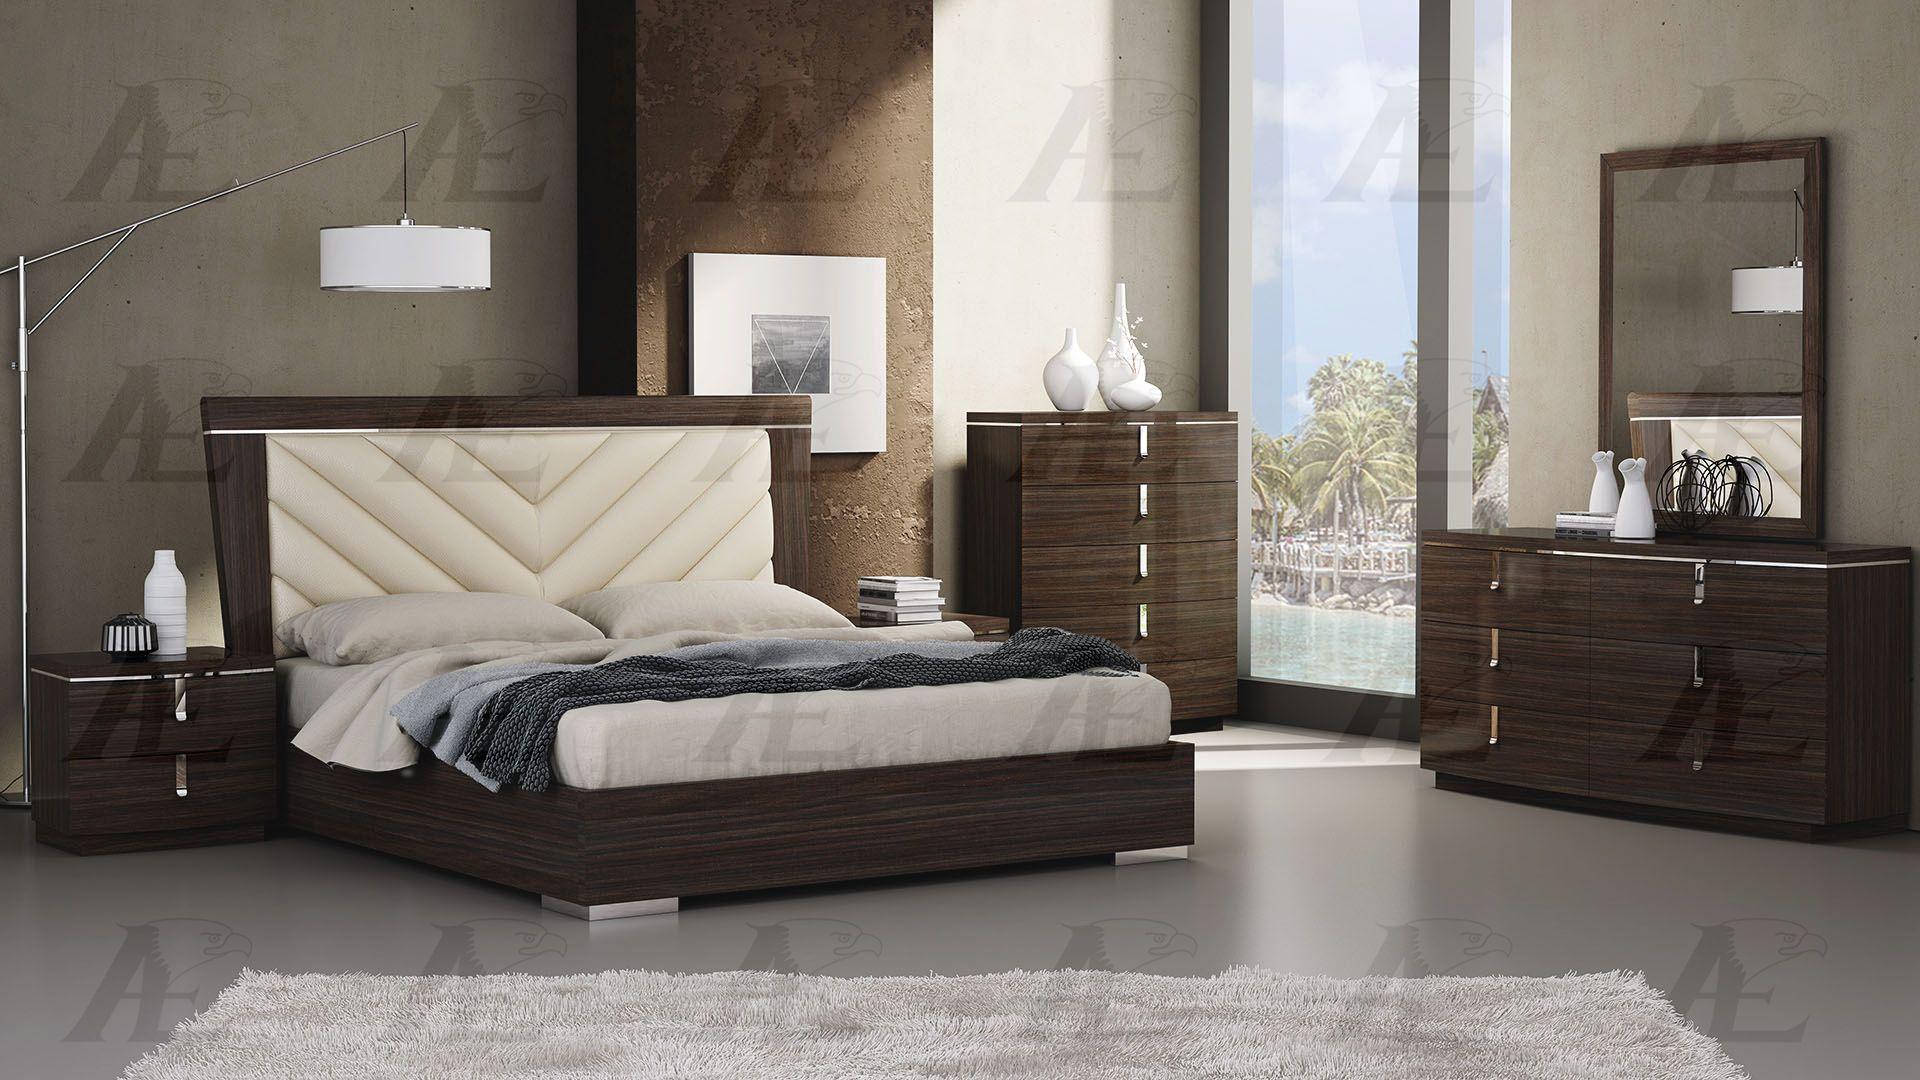 

                    
American Eagle Furniture P103-BED-EK Platform Bedroom Set Brown/Ivory PU Purchase 
